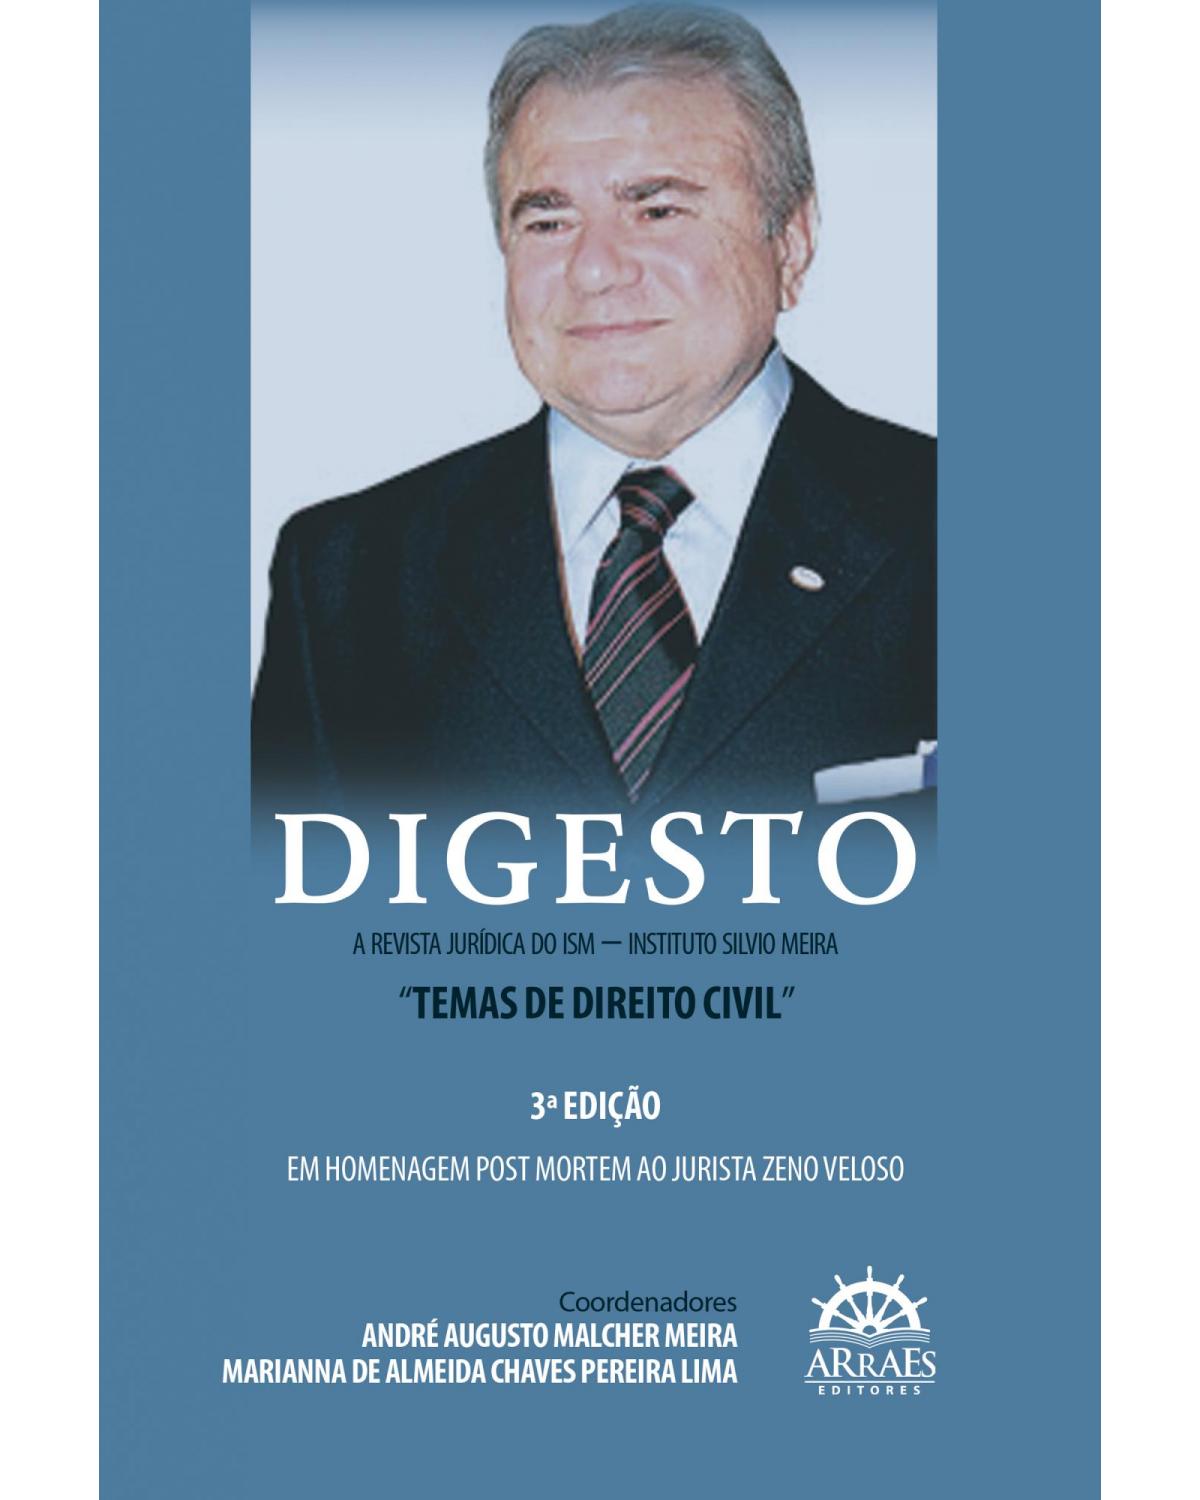 Digesto - A revista jurídica do ISM - Instituto Silvio Meira - temas de direito civil - 3ª Edição | 2022